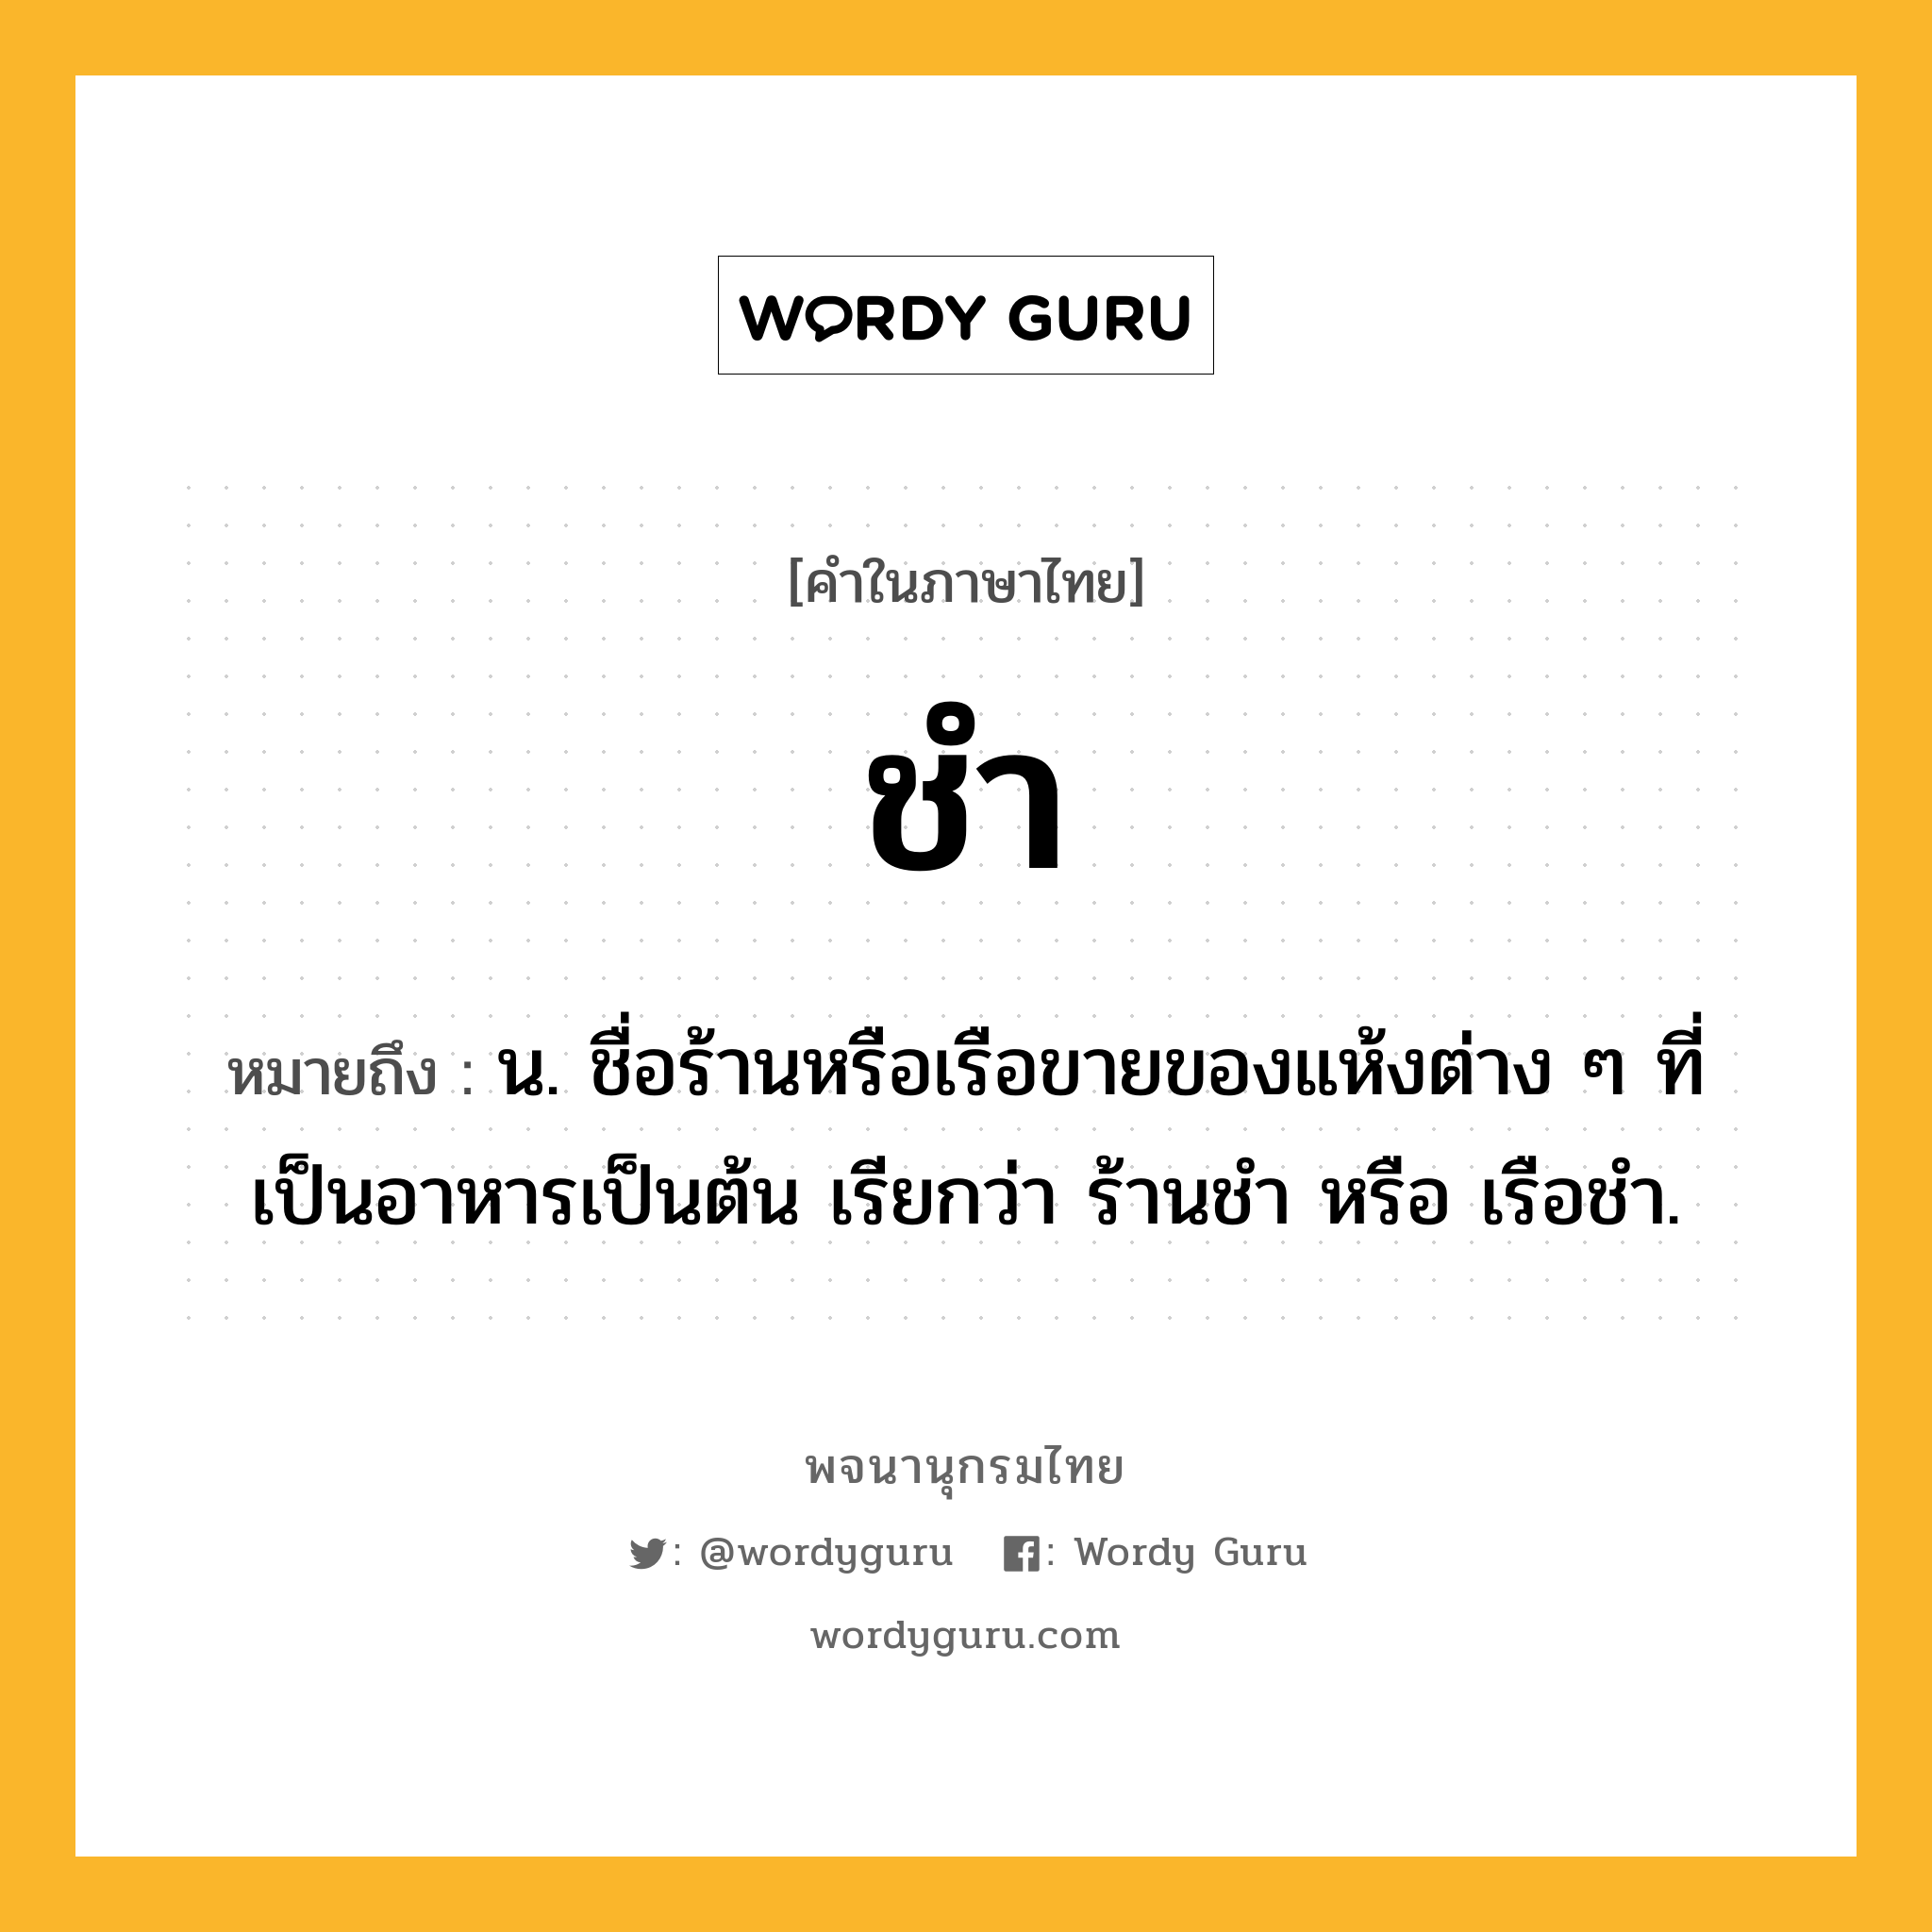 ชำ ความหมาย หมายถึงอะไร?, คำในภาษาไทย ชำ หมายถึง น. ชื่อร้านหรือเรือขายของแห้งต่าง ๆ ที่เป็นอาหารเป็นต้น เรียกว่า ร้านชํา หรือ เรือชํา.